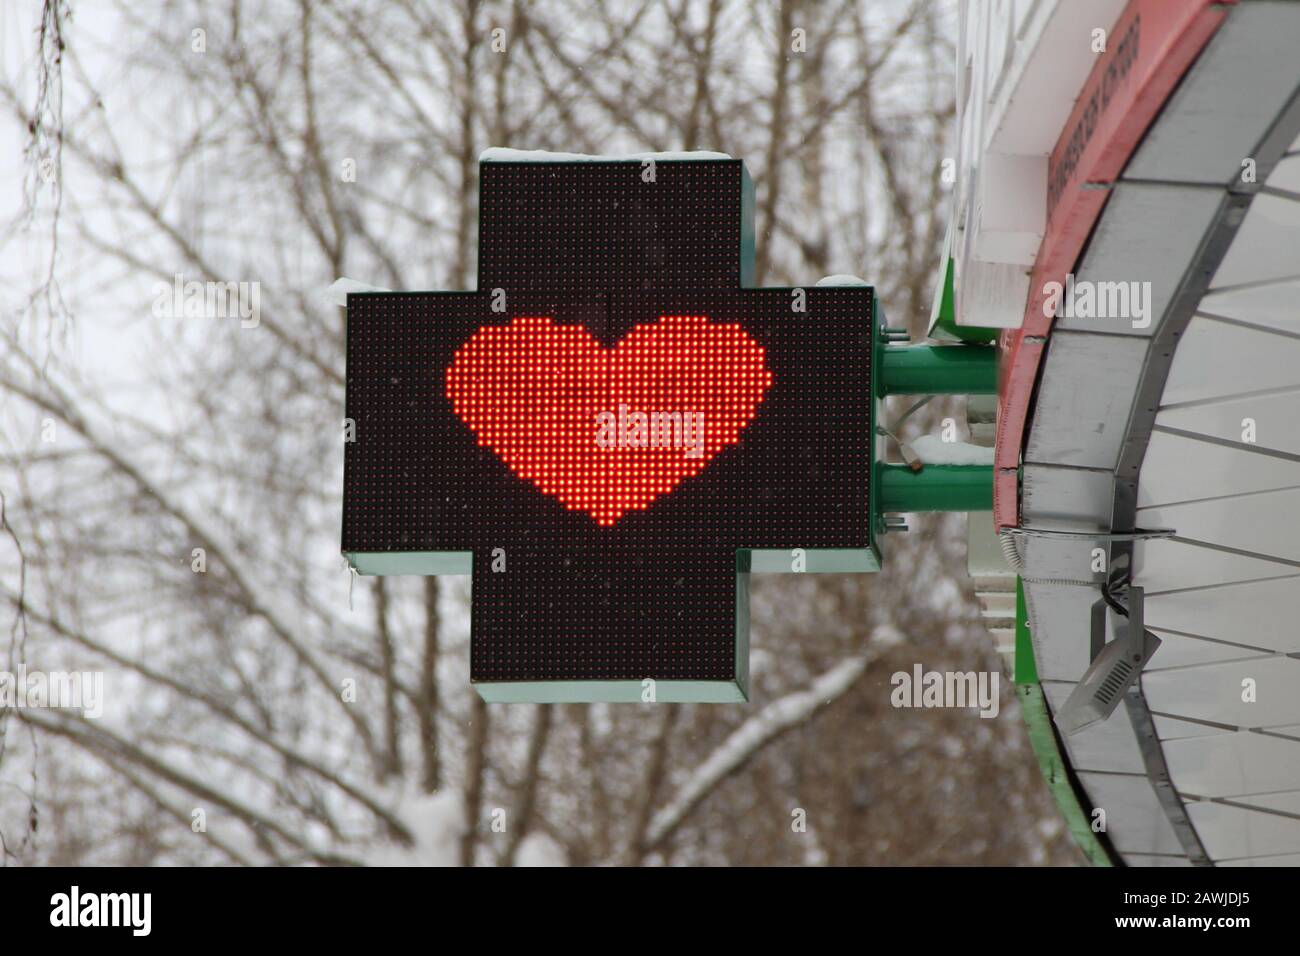 Cuore rosso su un pannello luminoso sotto forma di croce. Pubblicità disegno di una farmacia su una strada della città. Foto Stock